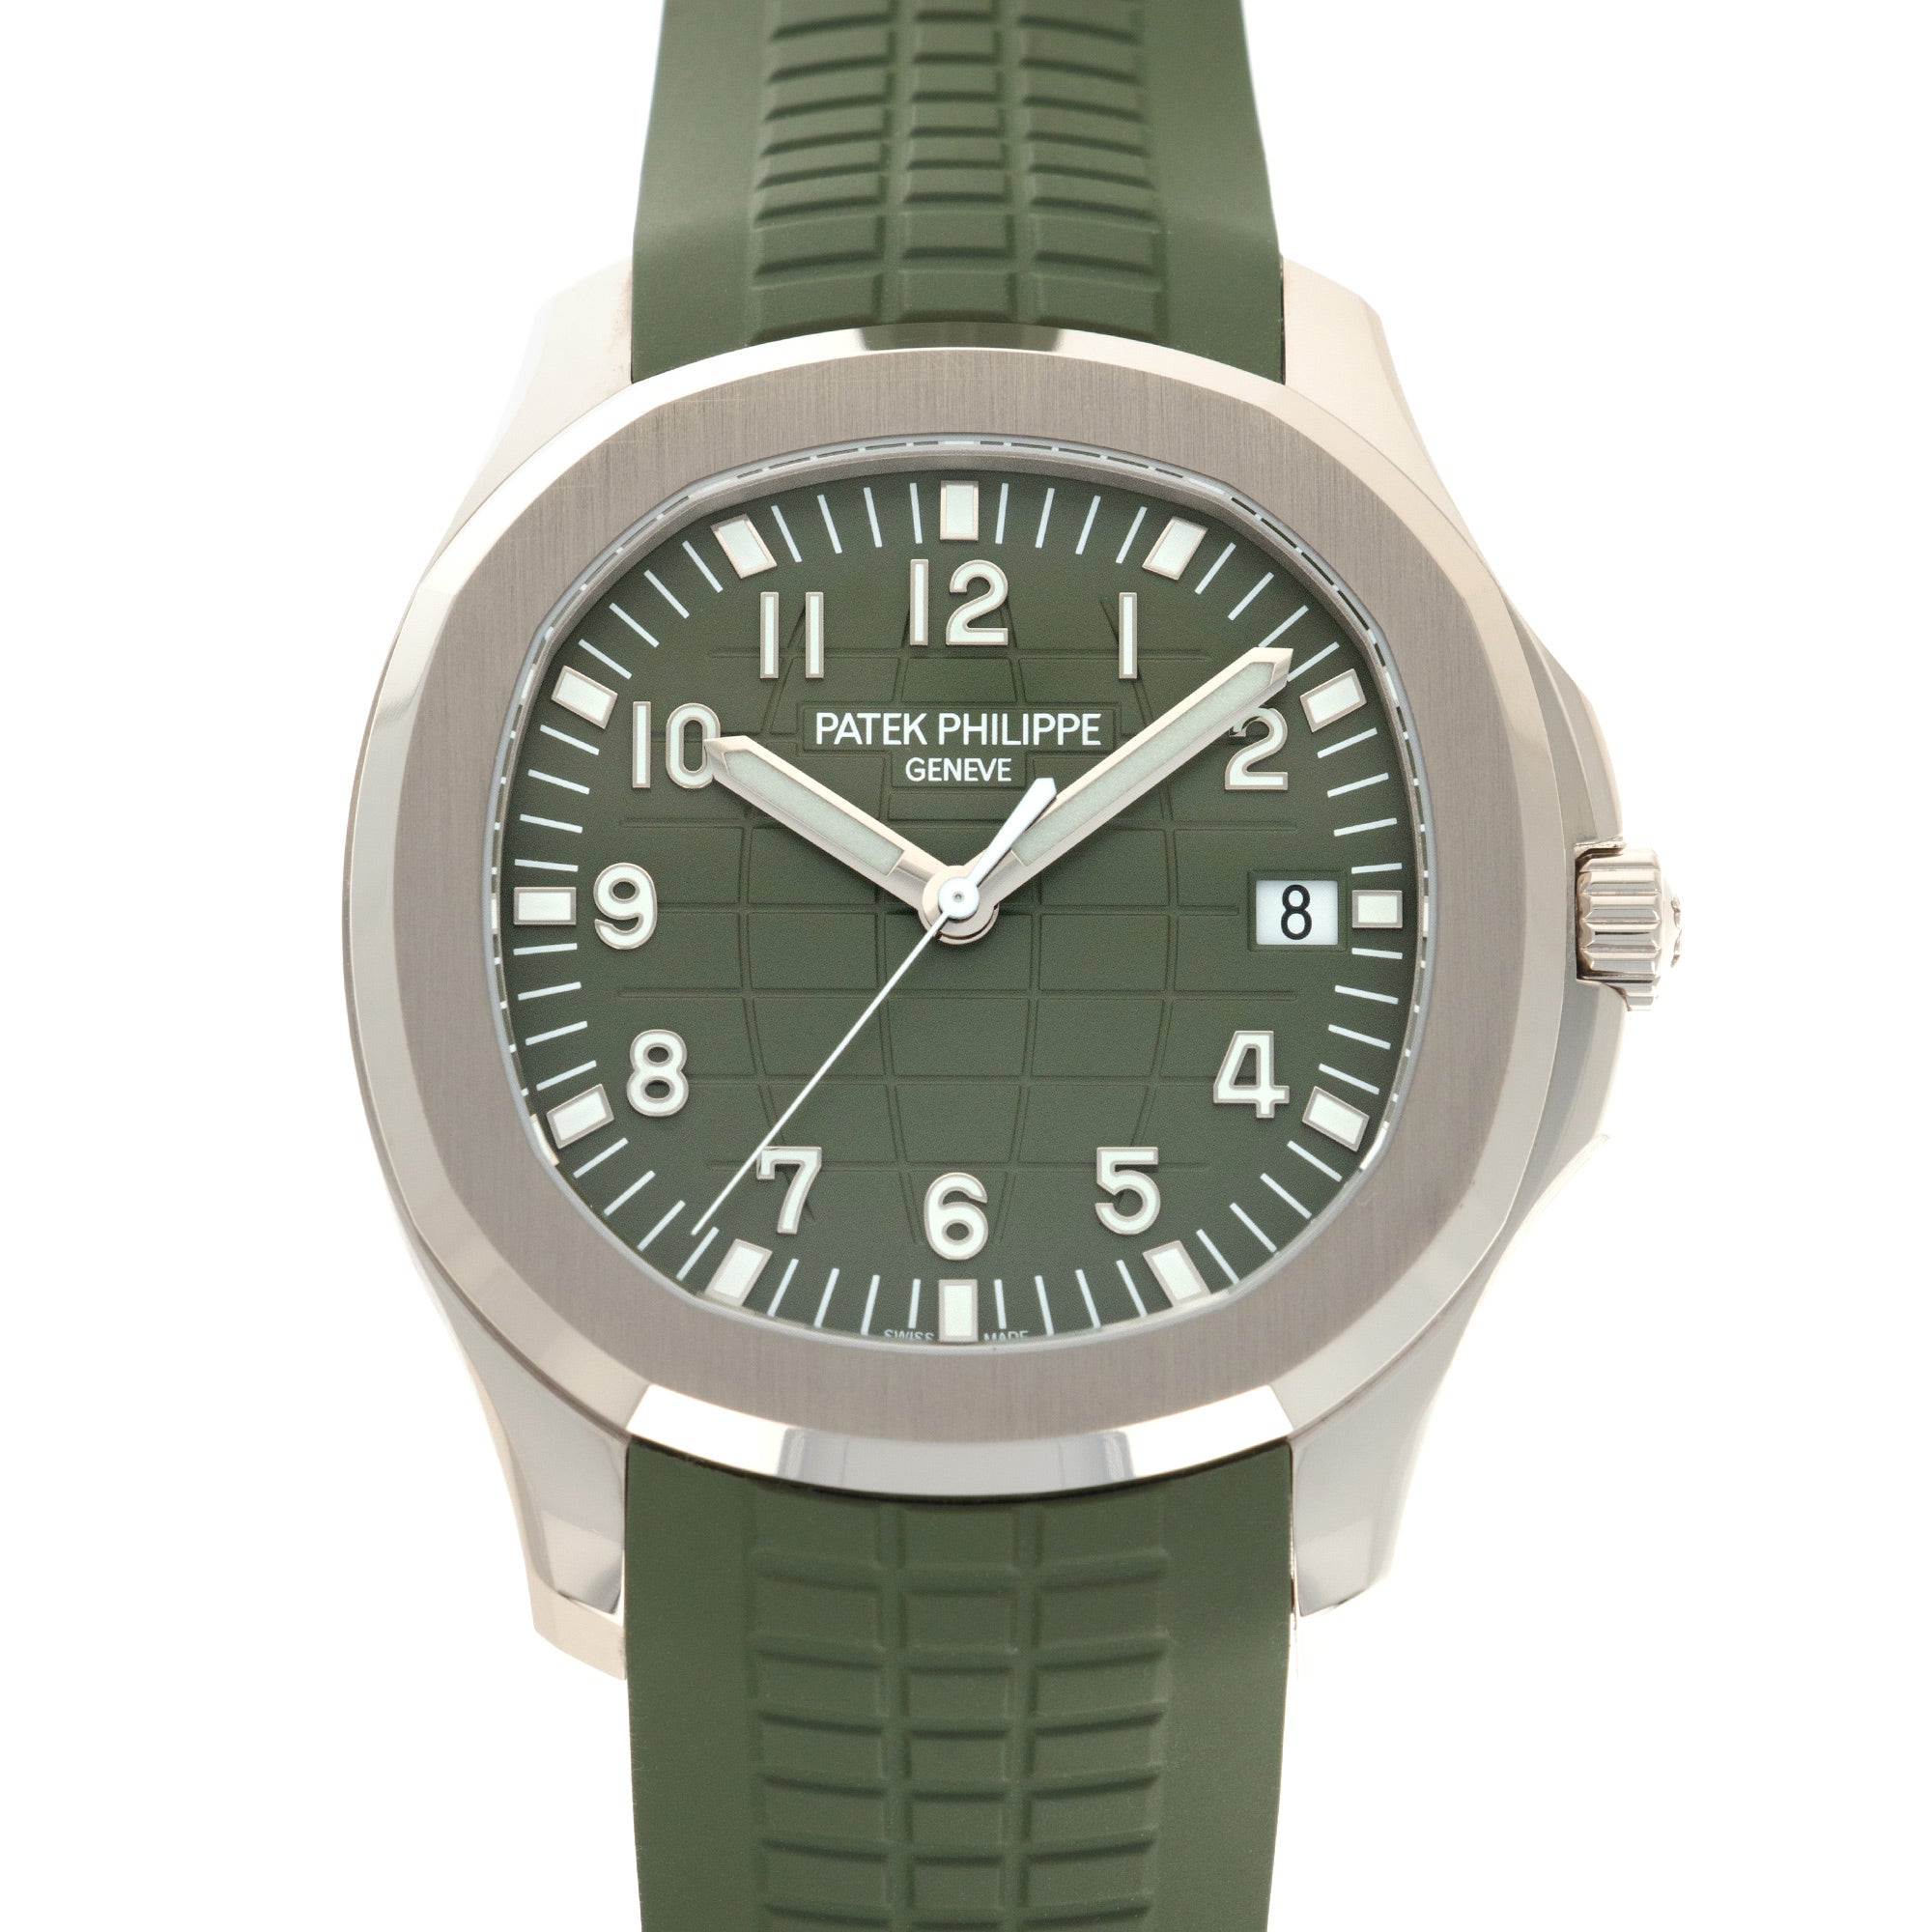 Patek Philippe - Patek Philippe White Gold Aquanaut Khaki Green Watch Ref. 5168 - The Keystone Watches